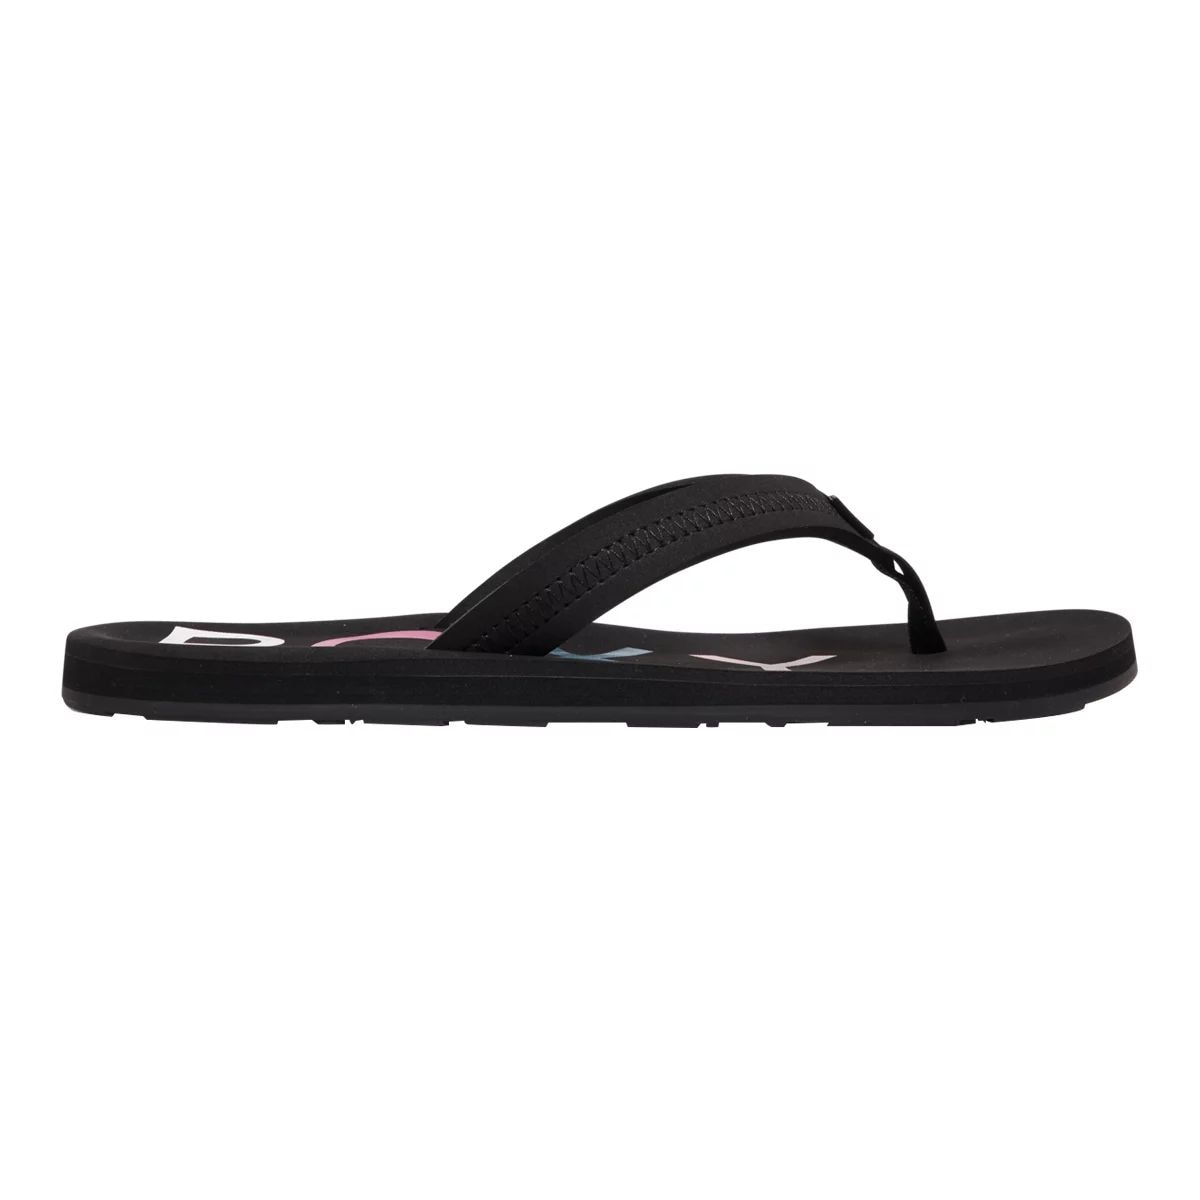 Roxy Women's Vista III Flip Flops/Sandals  Beach Water Resistant